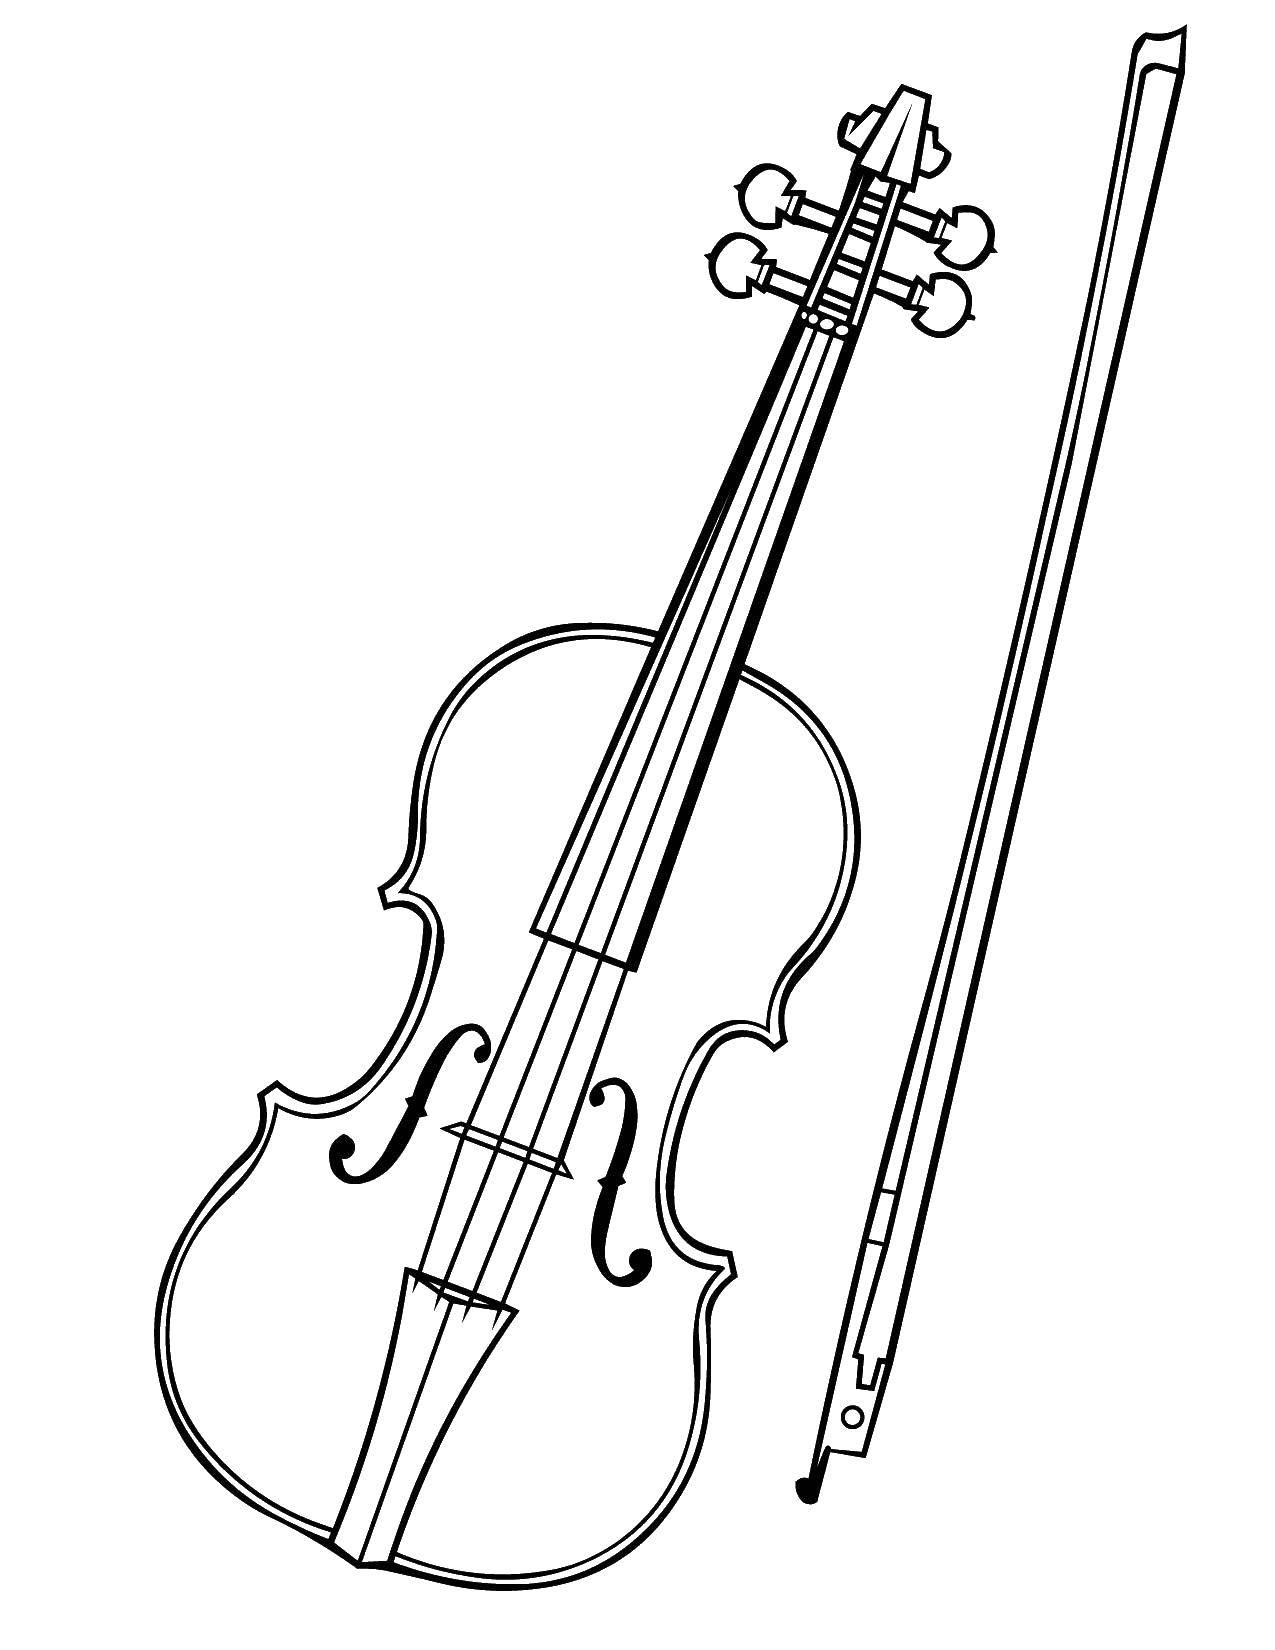 Увлекательная раскраска скрипки для детей